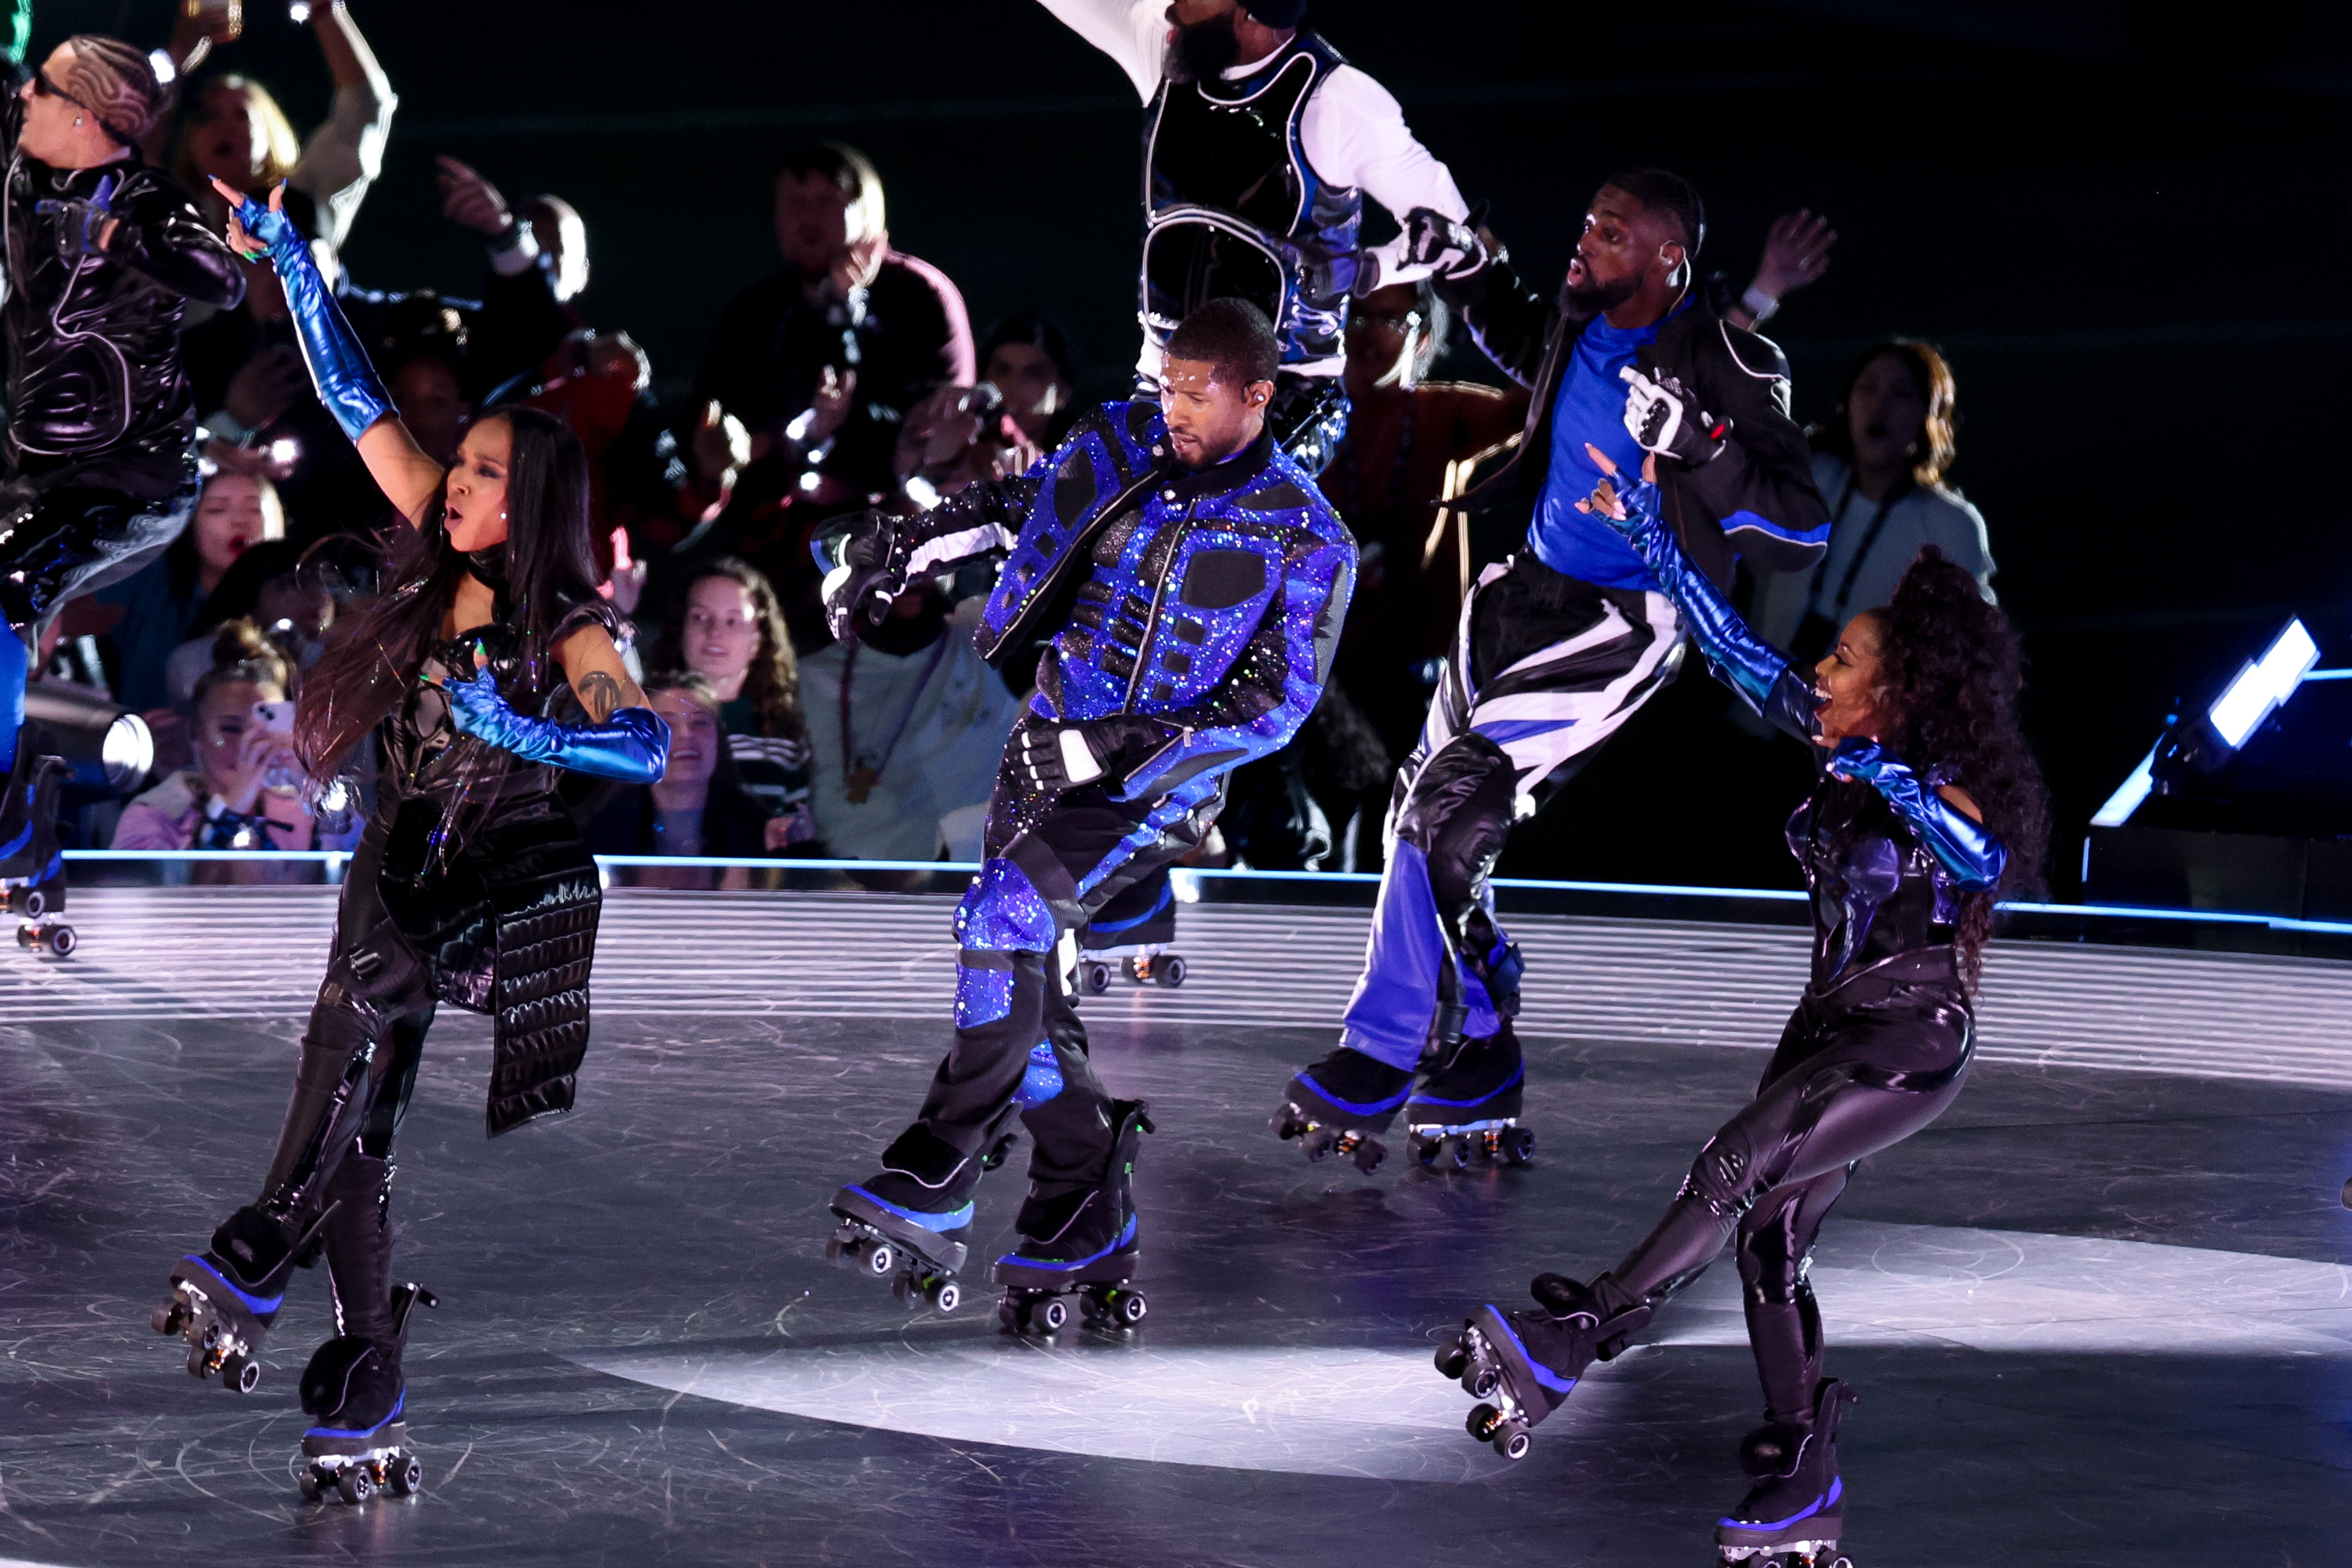 Usher roller skating onstage at the Super Bowl